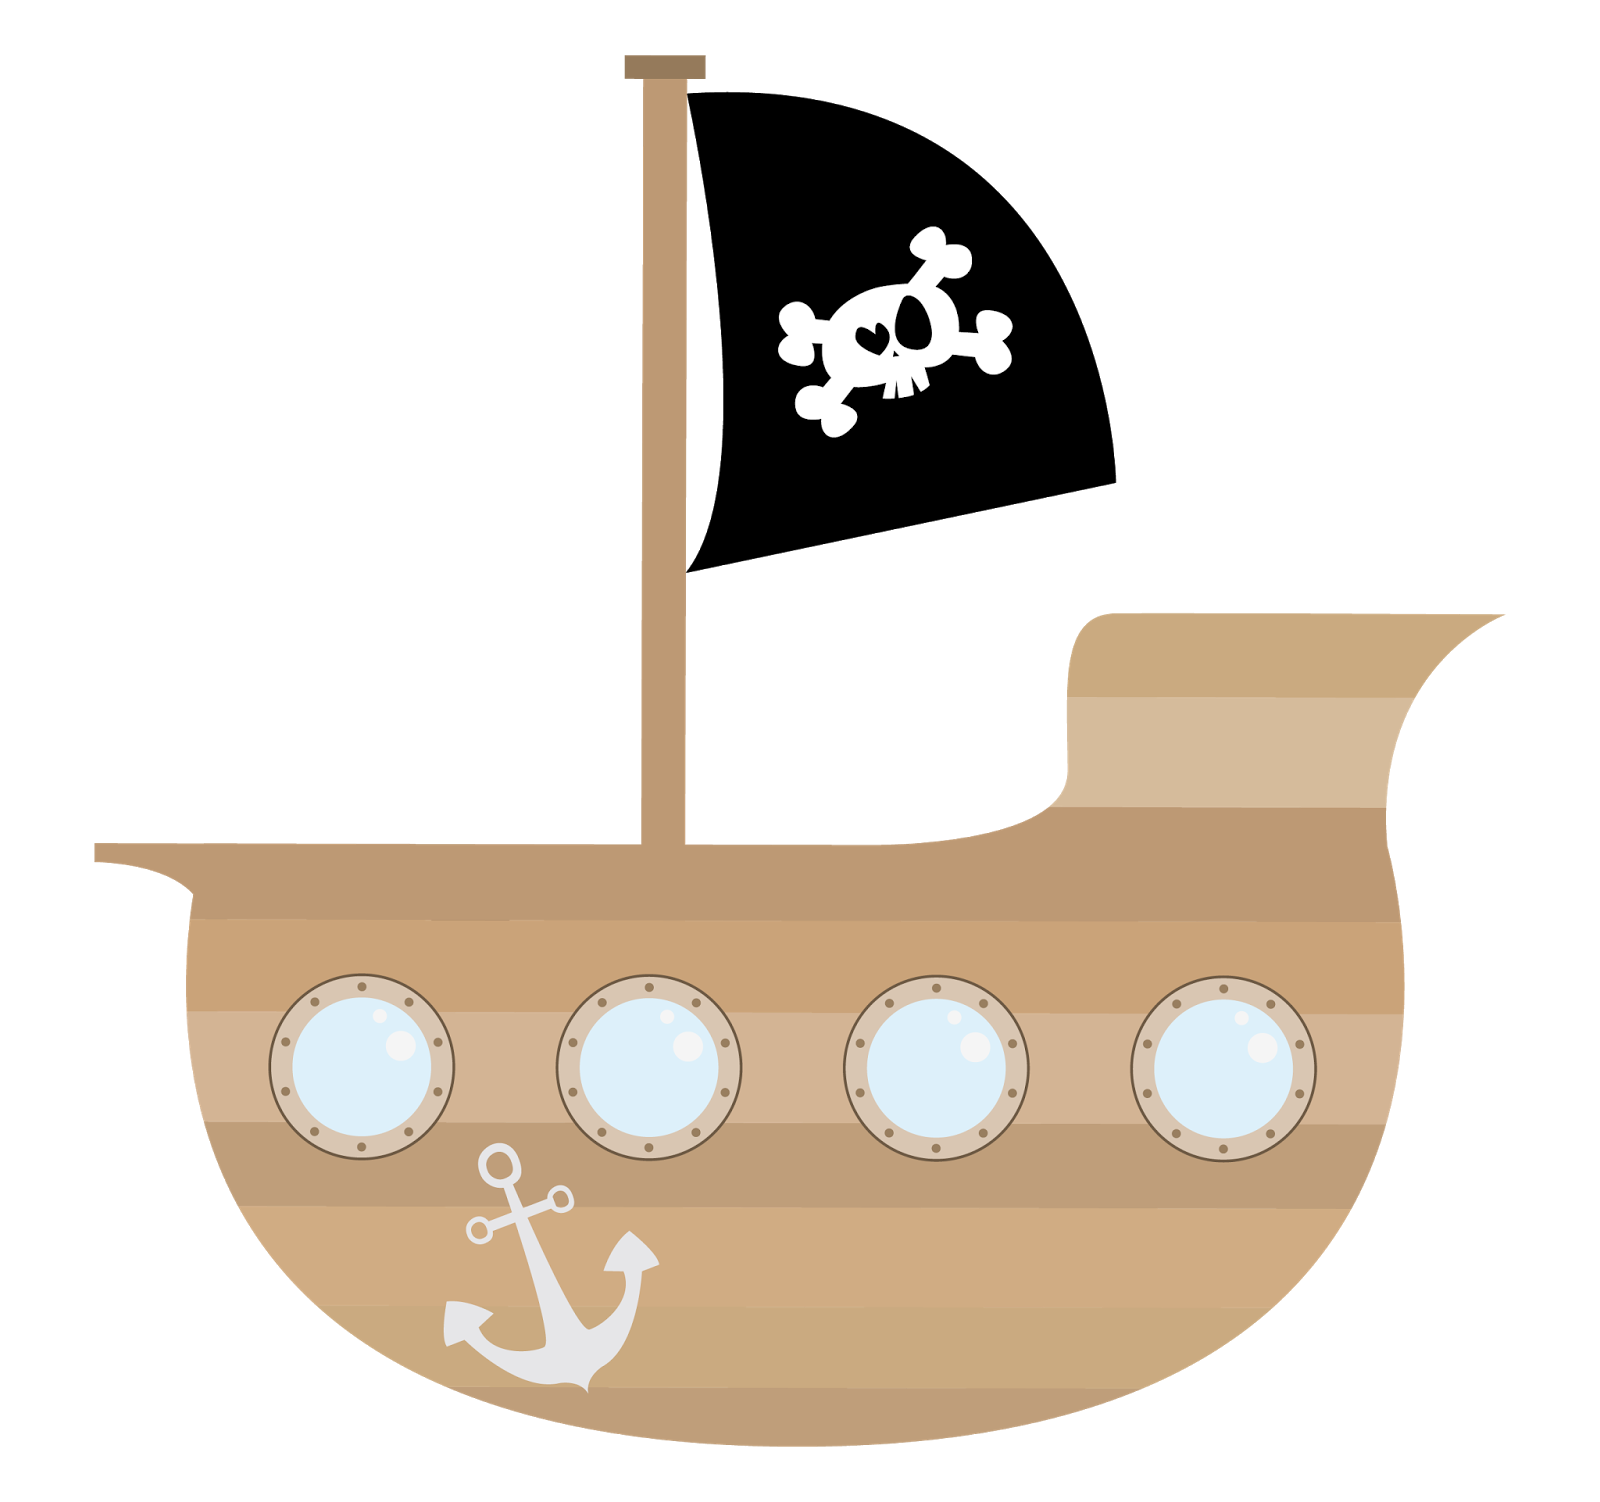 Pirate clipart pirate ship, Pirate pirate ship Transparent